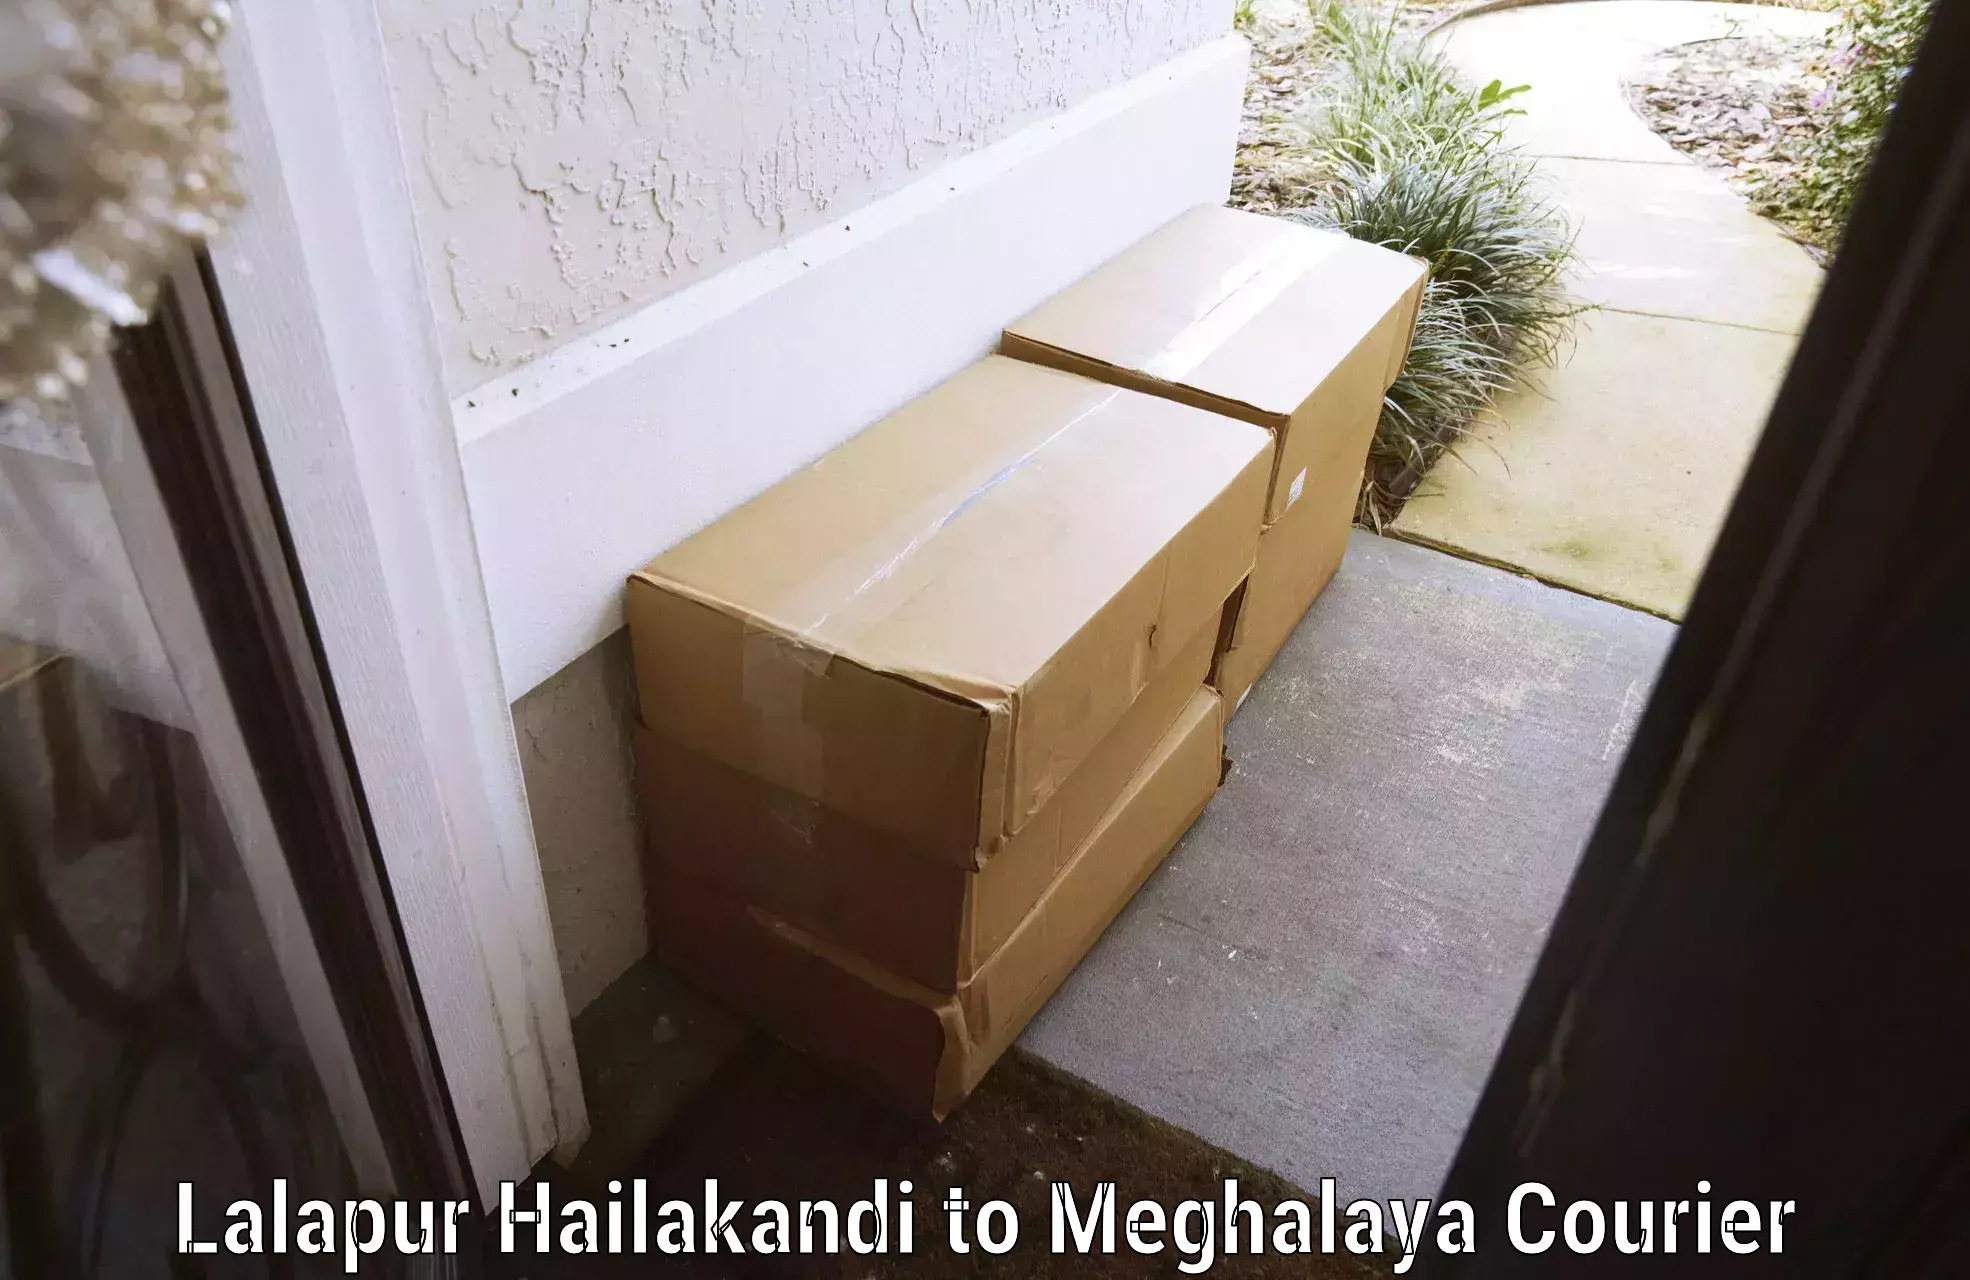 Luggage delivery network Lalapur Hailakandi to Meghalaya